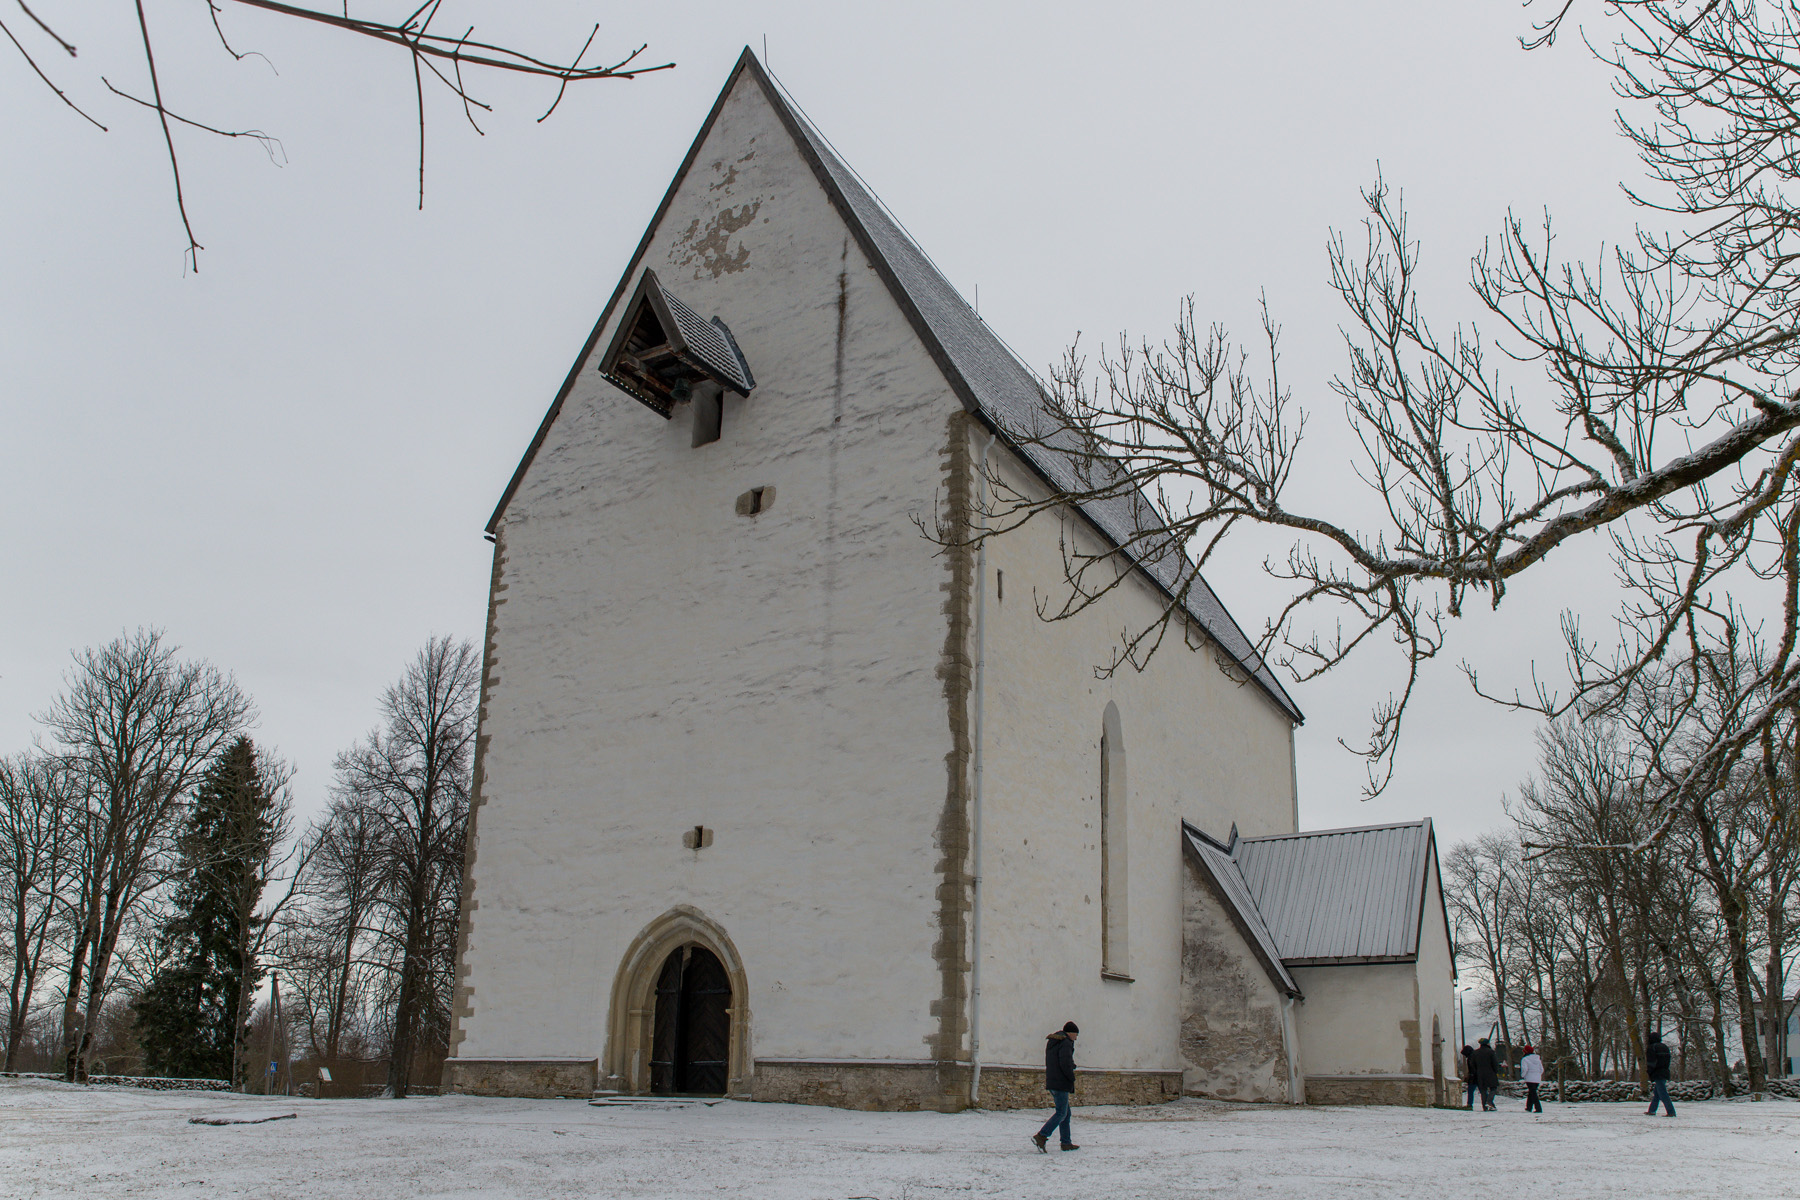 20160319-Saaremaa-223-Muhu-kirik.jpg - 18.-20. märts 2016. Saaremaa ringreis. Muhu kirik